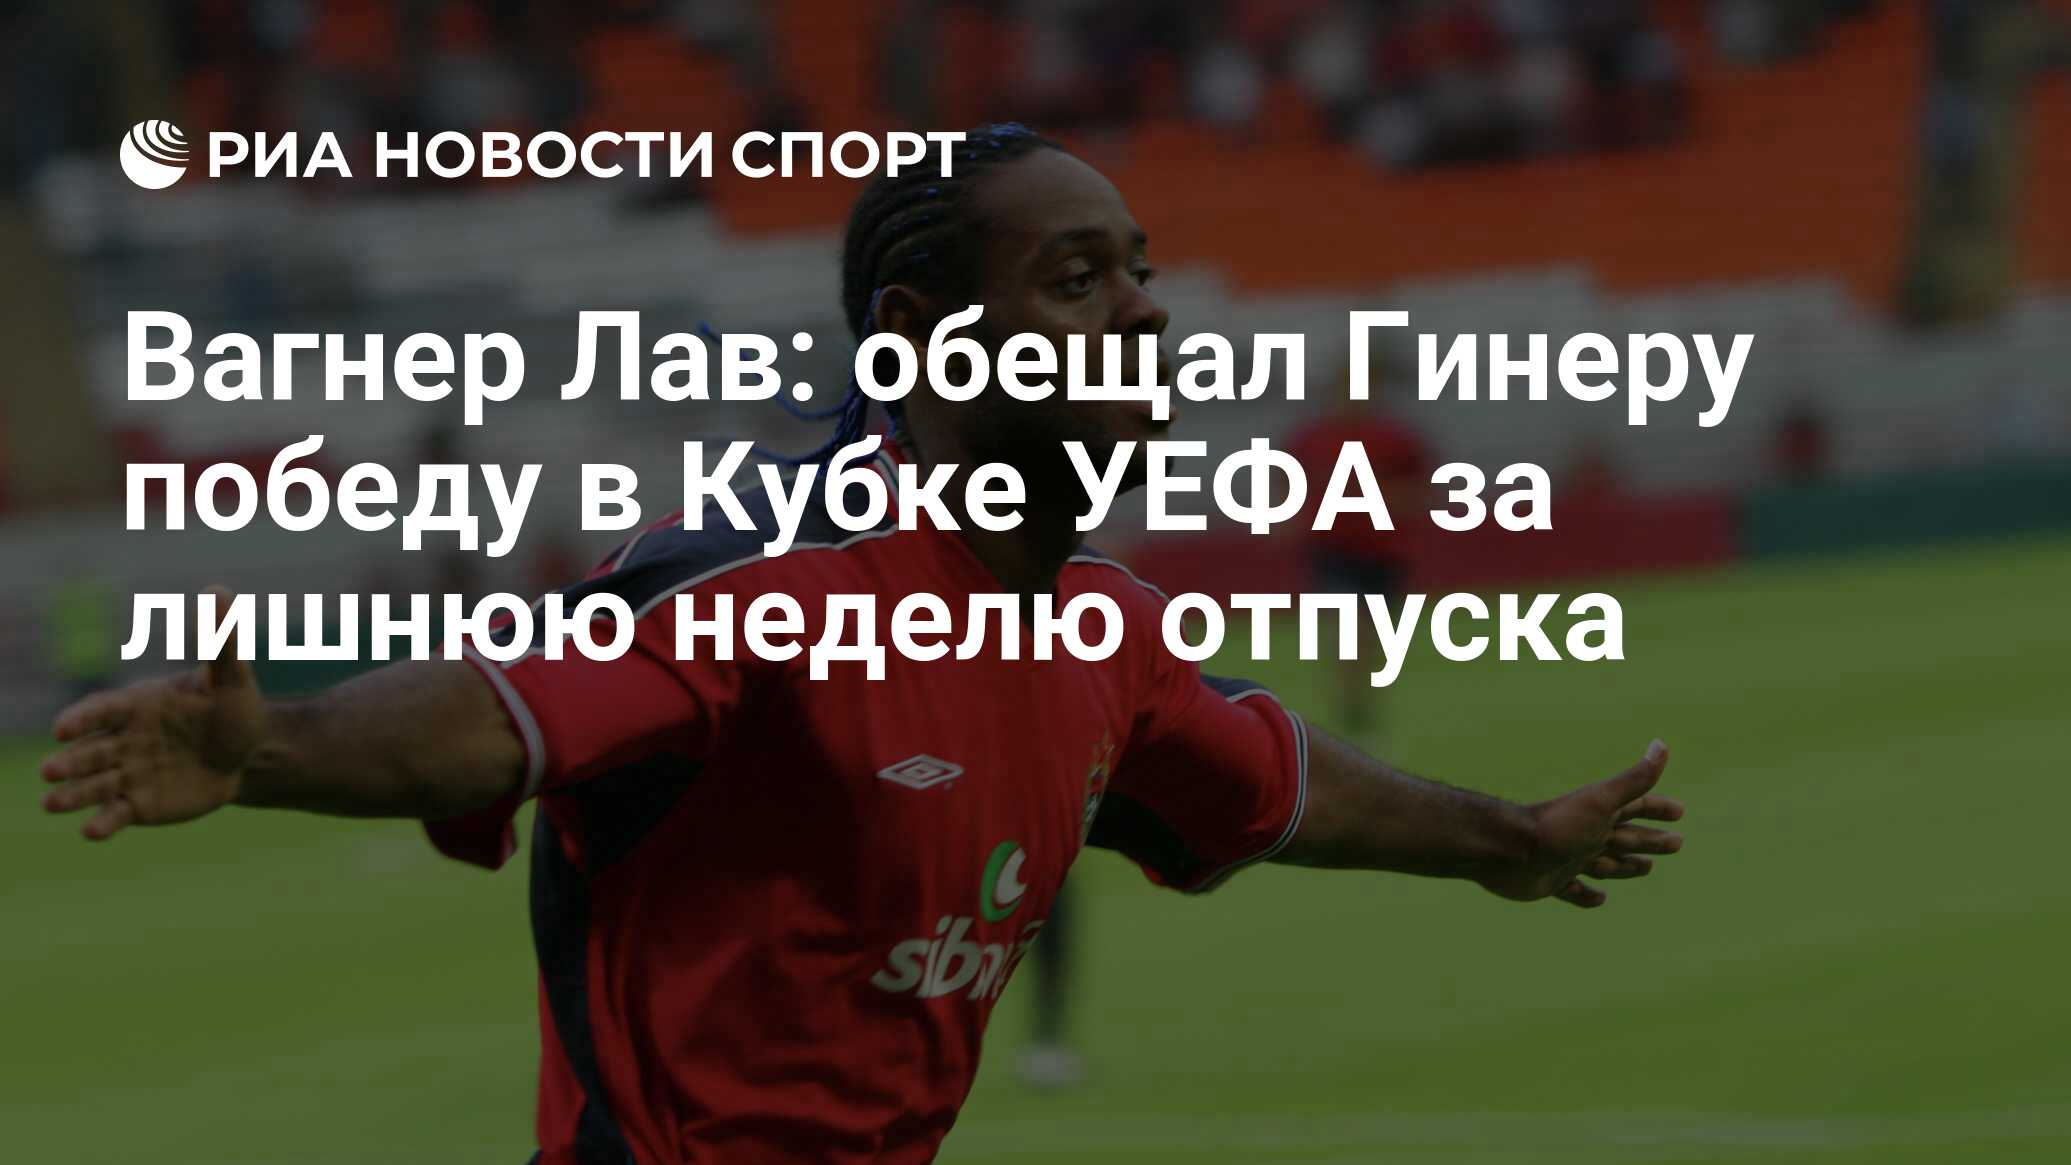 Вагнер Лав: обещал Гинеру победу в Кубке УЕФА за лишнюю неделю отпуска -  РИА Новости Спорт, 18.05.2020